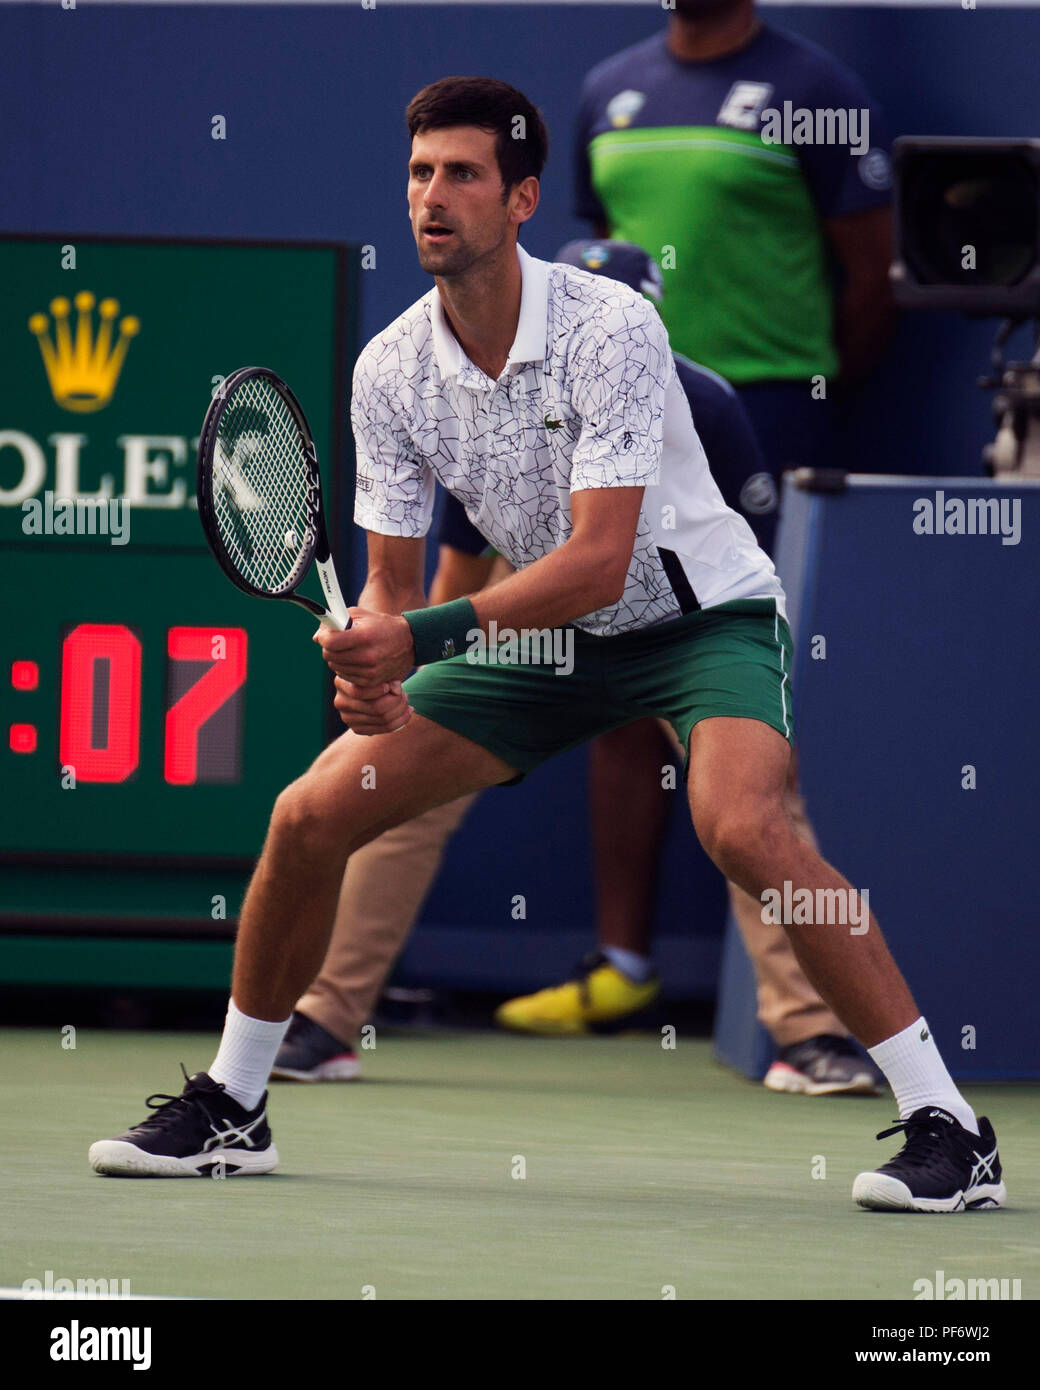 Mason, Ohio, USA. 19 août 2018 : Novak Djokovic (SRB) prépare lui-même contre Roger Federer (SUI) à la région du sud-ouest de l'ouvrir à Mason, Ohio, USA. Brent Clark/Alamy Live News Banque D'Images